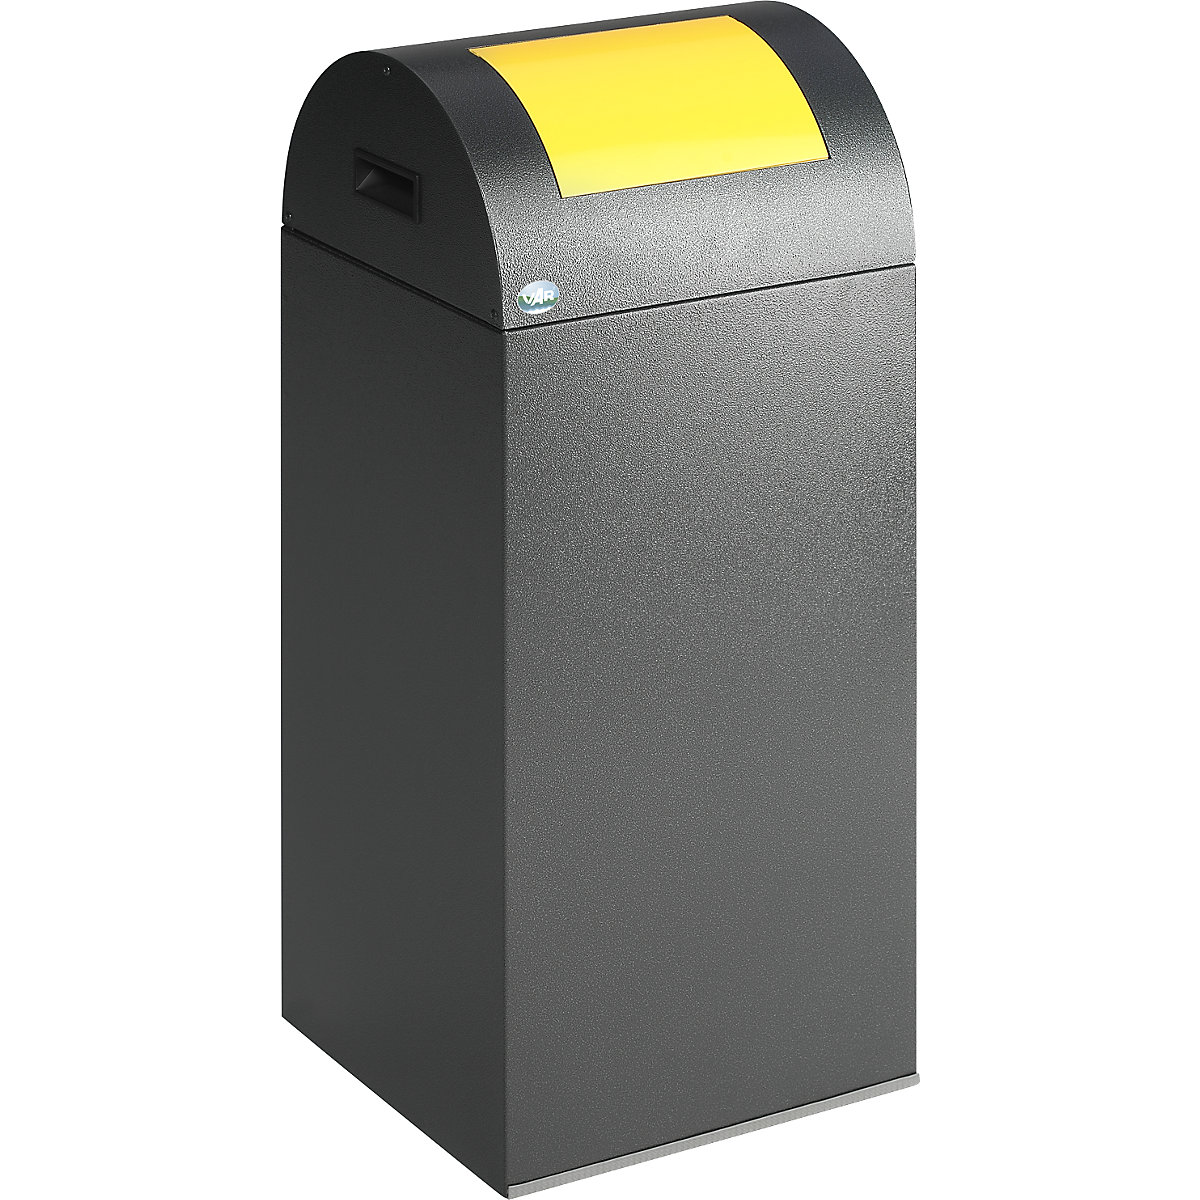 Coletor de materiais recicláveis autoextintor - VAR